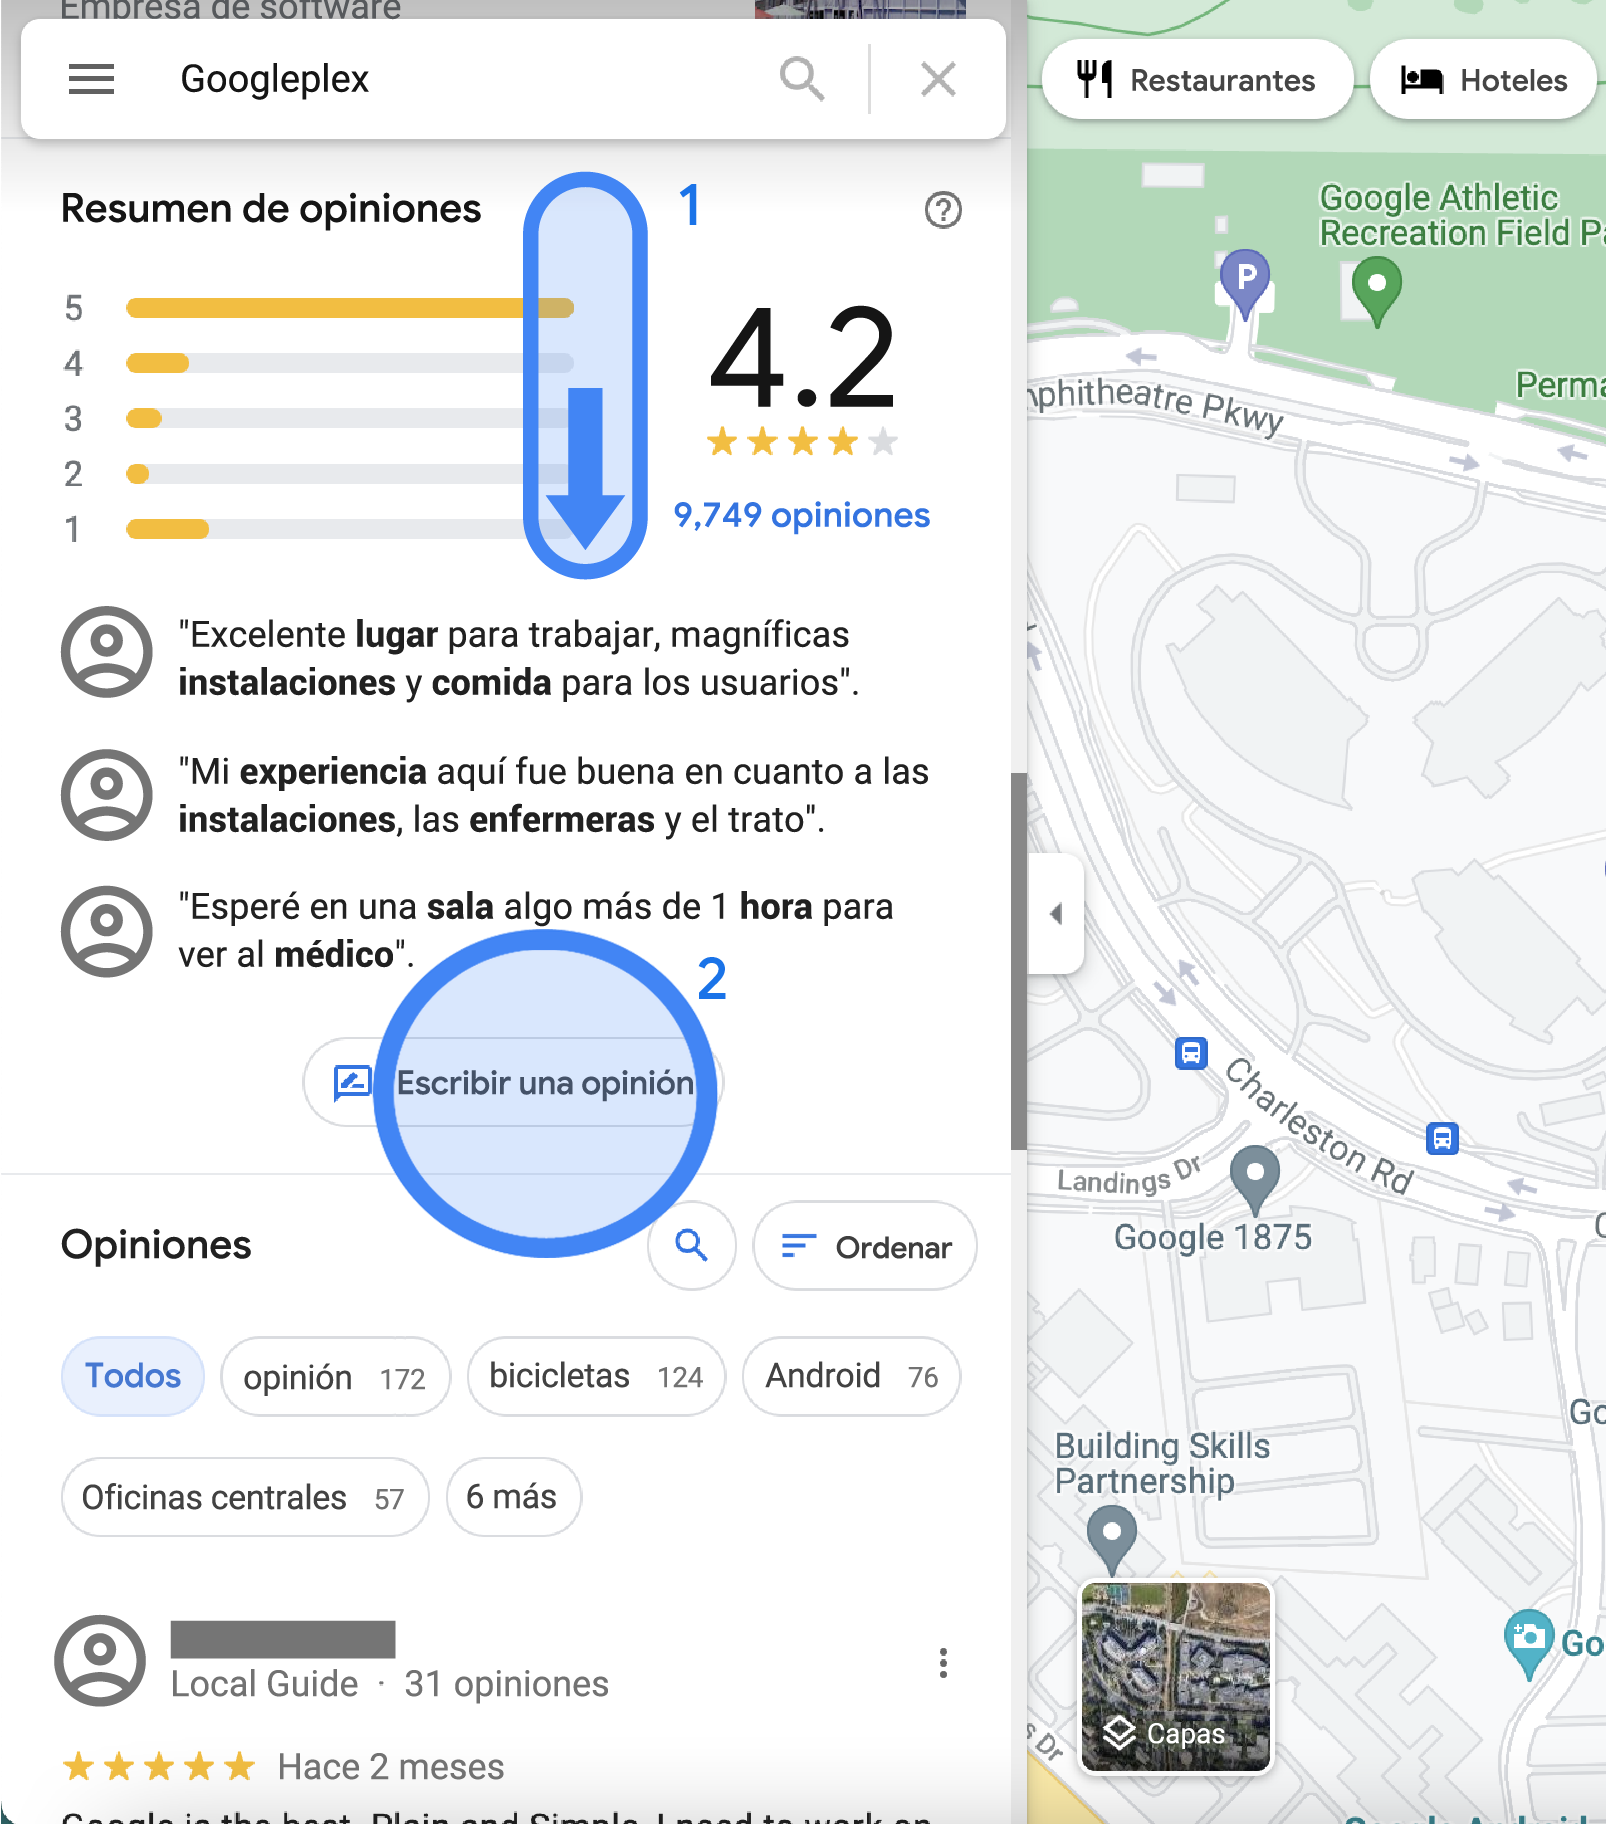 Se muestra el resumen de las opiniones sobre la ubicación de Googleplex en la barra lateral izquierda en Google Maps. Esta muestra las calificaciones promedio, las opiniones destacadas, un botón que dice "Escribir una opinión" y una lista de todas las opiniones.